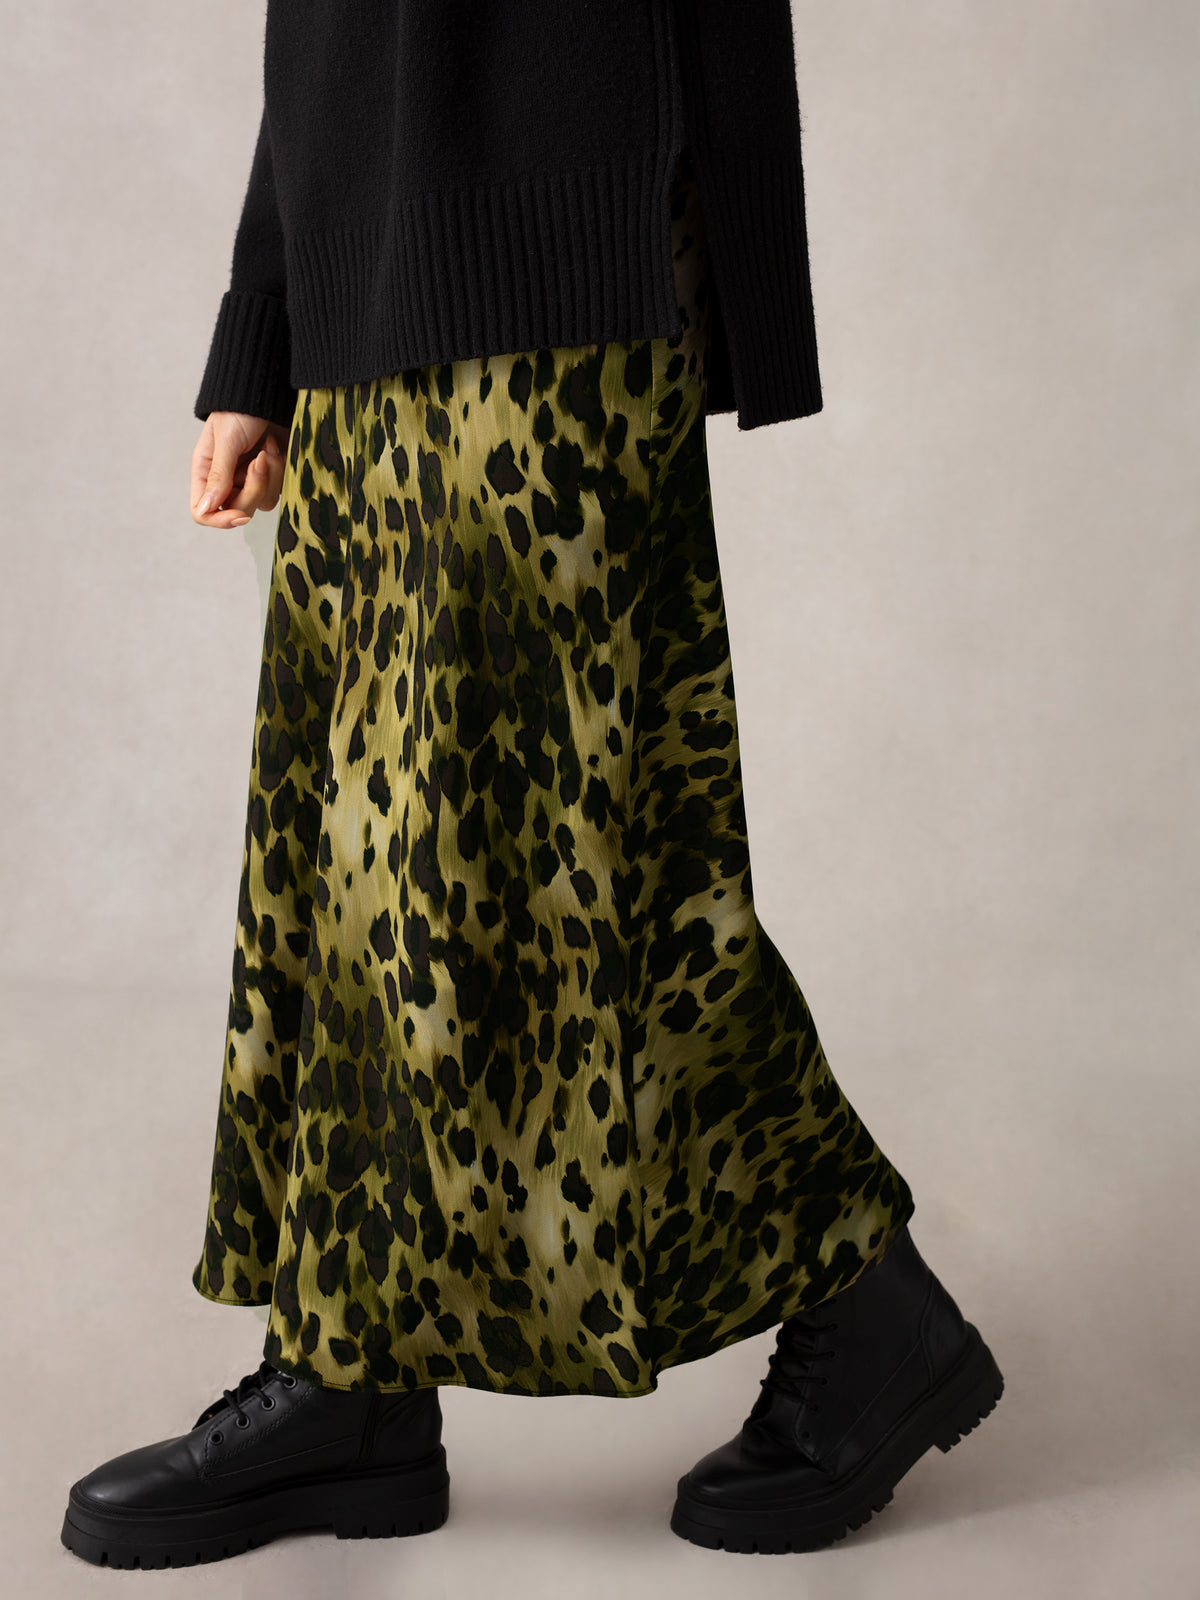 Soft Leopard Bias Cut Skirt